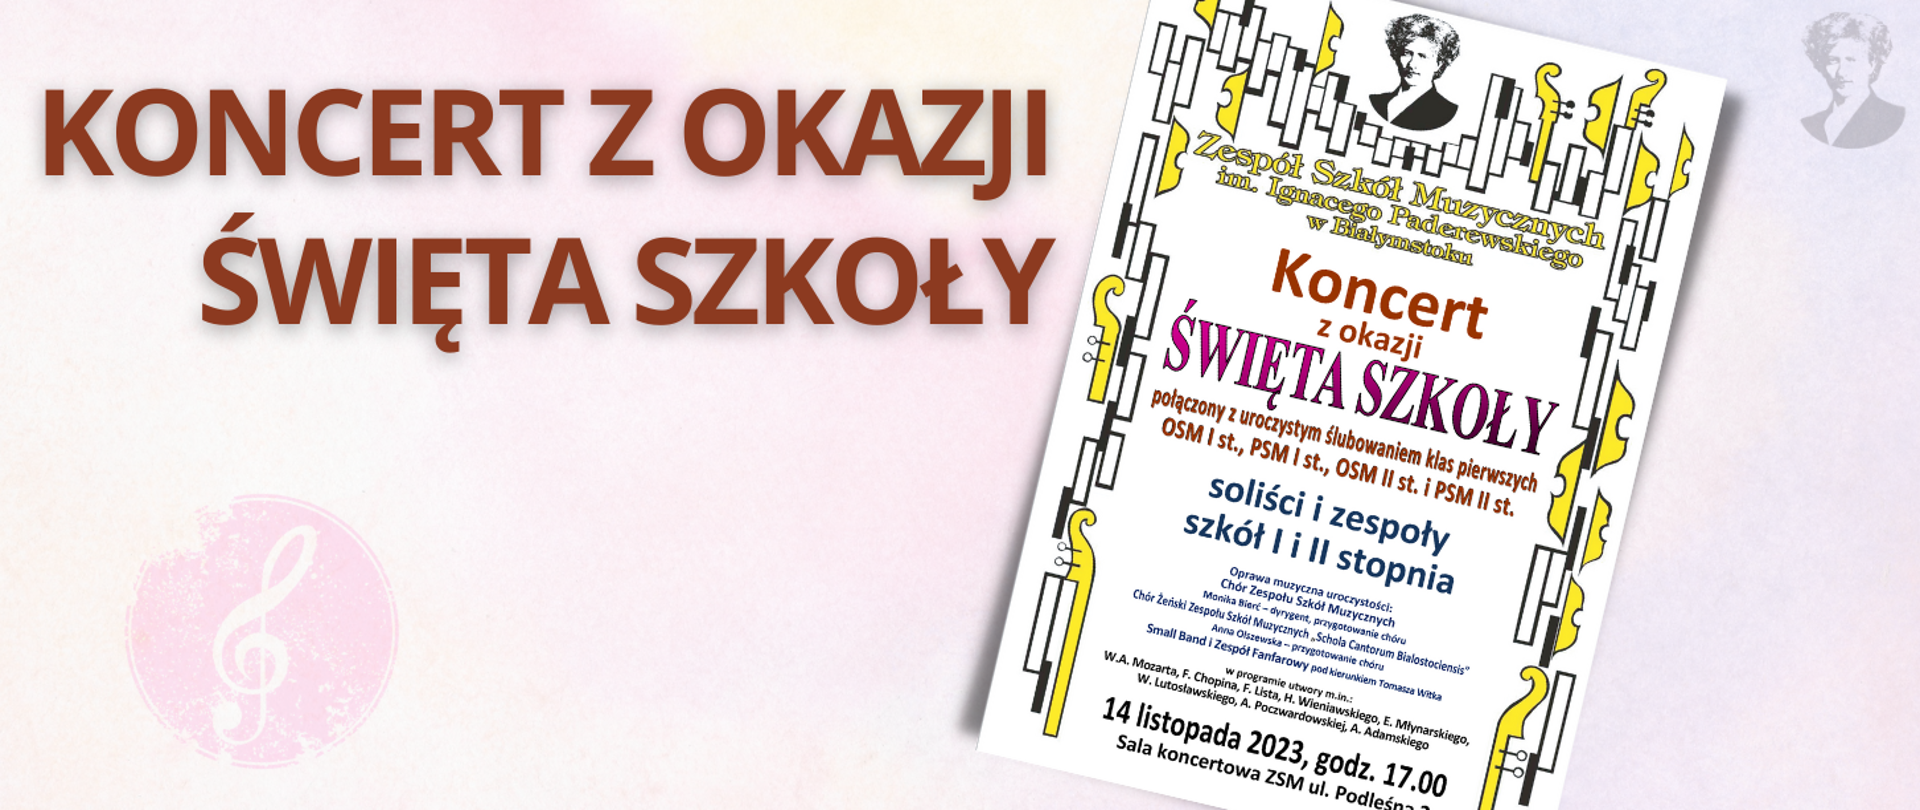 Na jasno-różowym tle brązowy napis "Koncert z okazji święta szkoły". Po prawej stronie miniatura plakatu oraz podobizna Ignacego Paderewskiego.